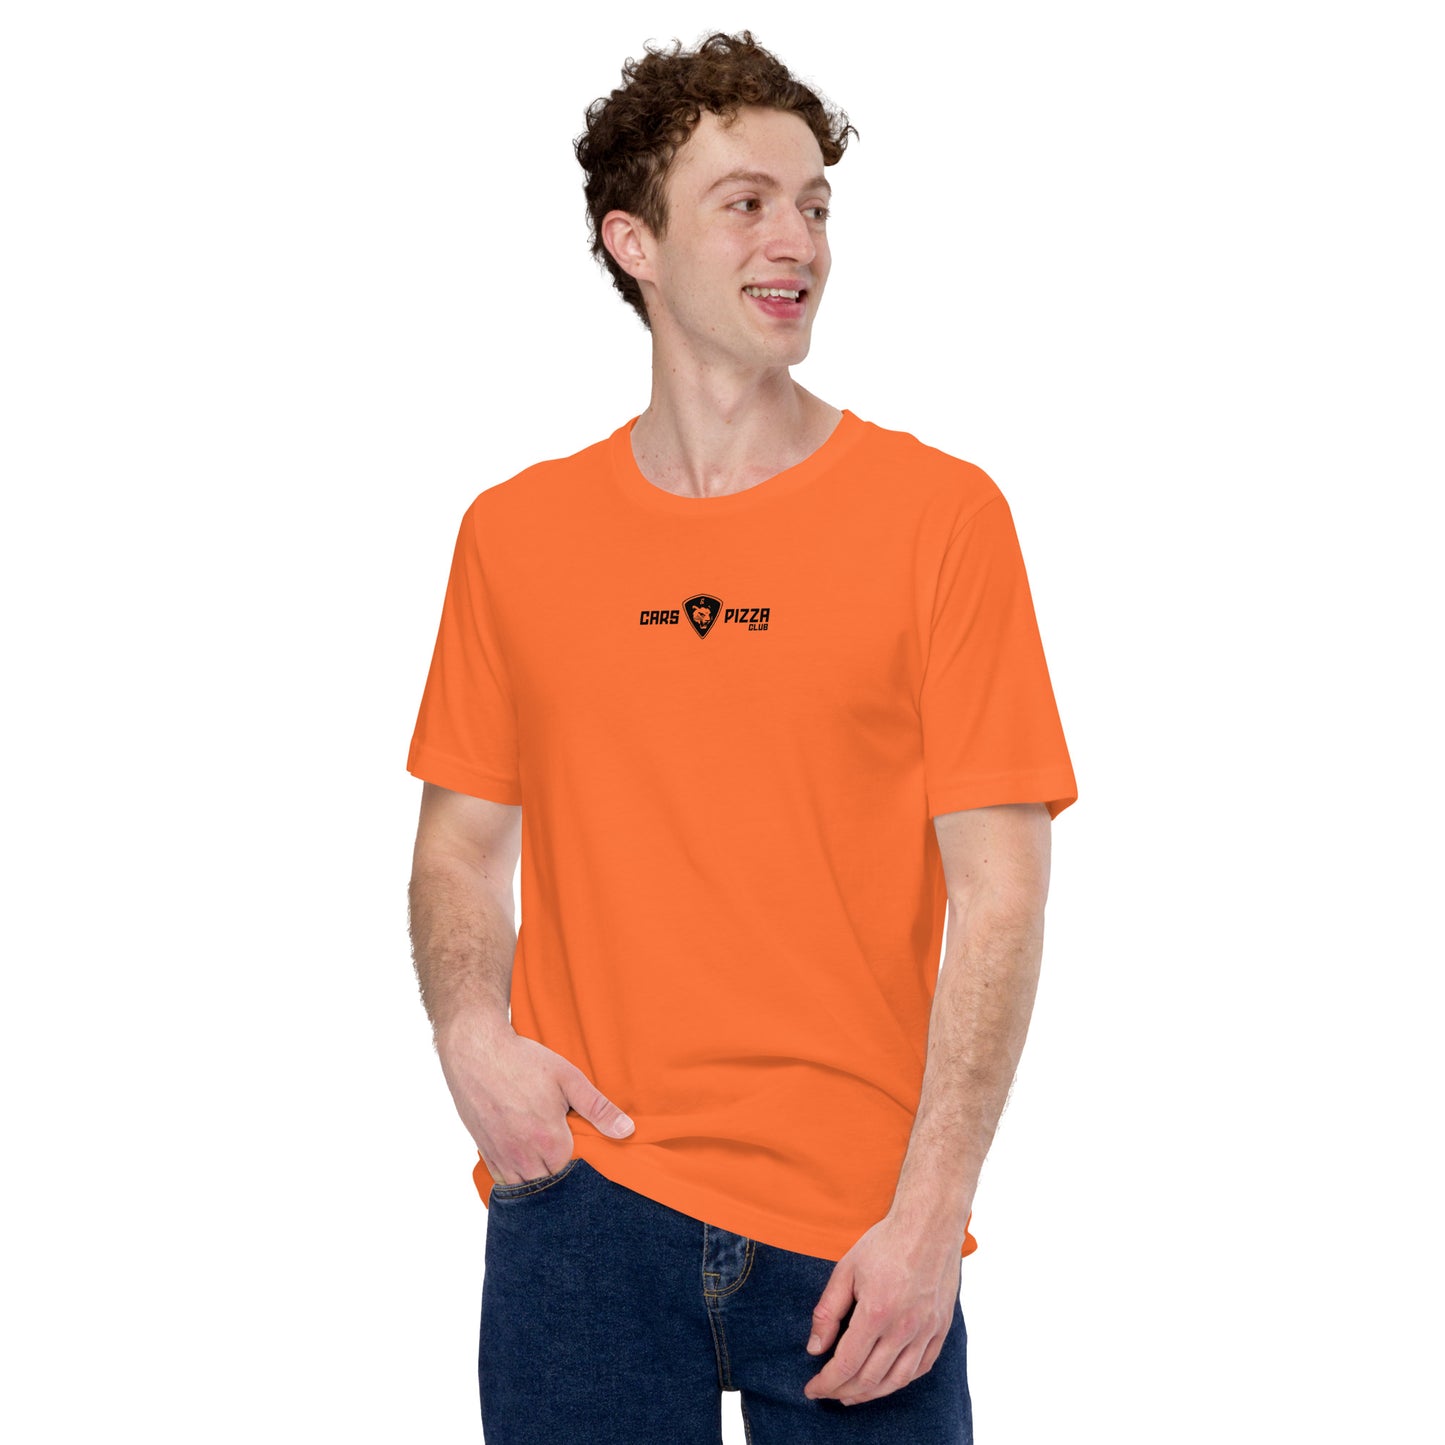 Camiseta unisex Essential Collection